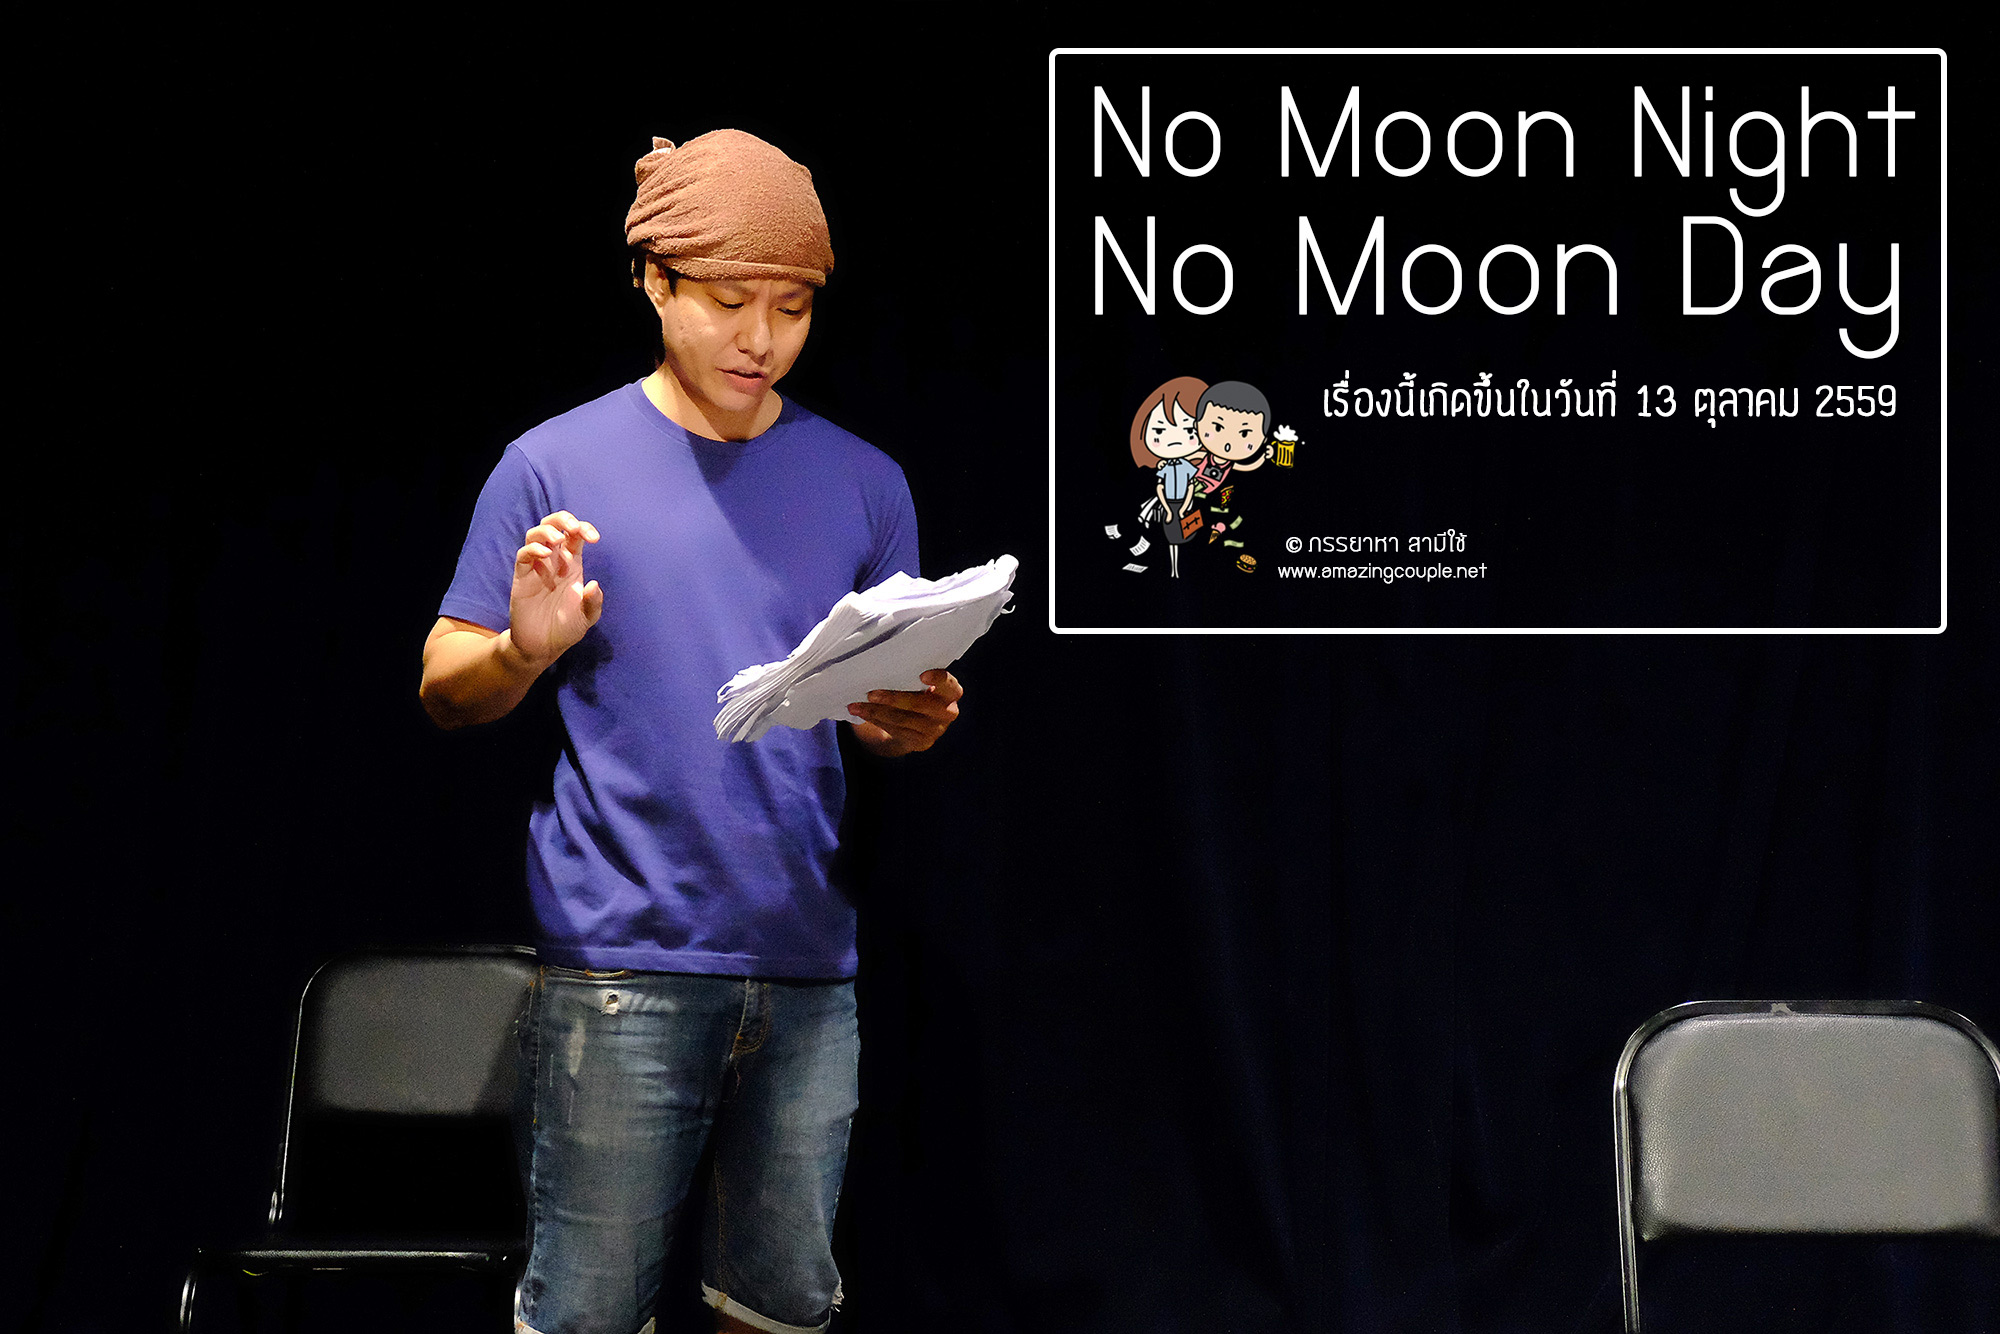 No Moon Night No Moon Day เรื่องนี้เกิดขึ้นในวันที่ 13 ตุลาคม 2559